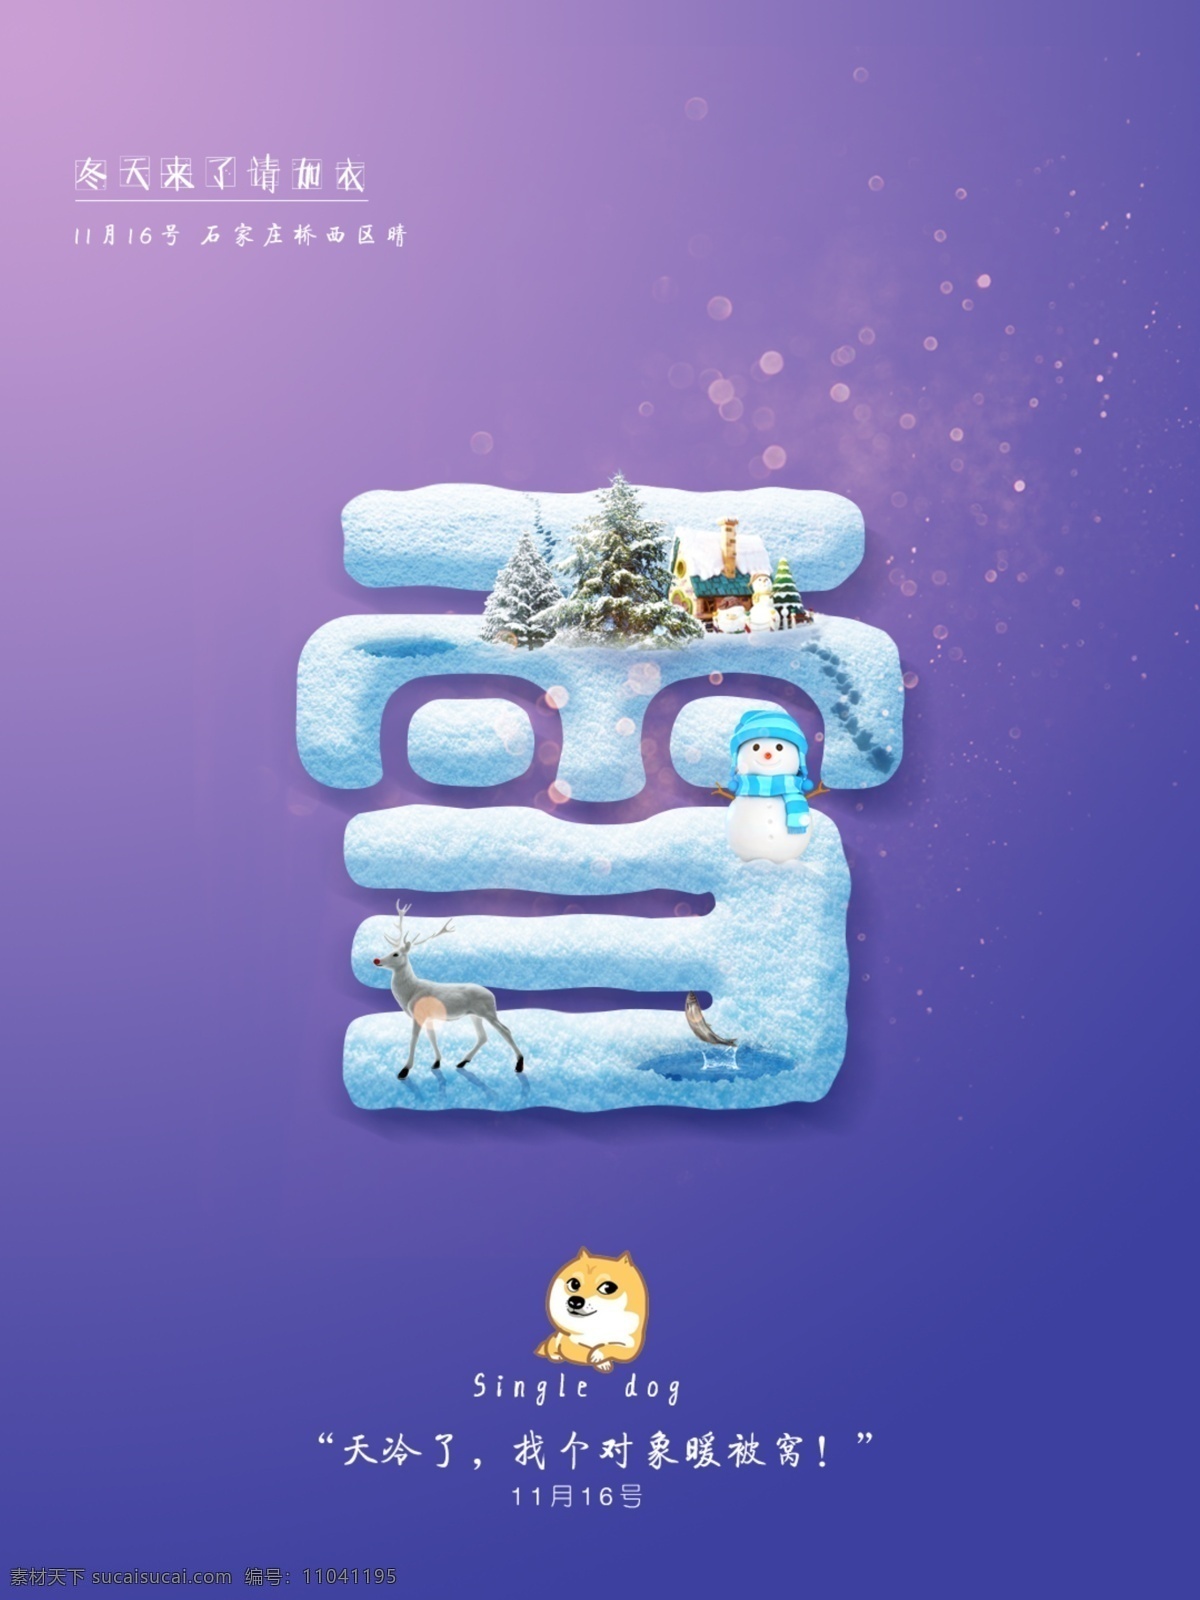 紫色 蓝字 雪 字 雪素材 冬 冬天素材 雪海报素材 圣诞节 海报素材 海报